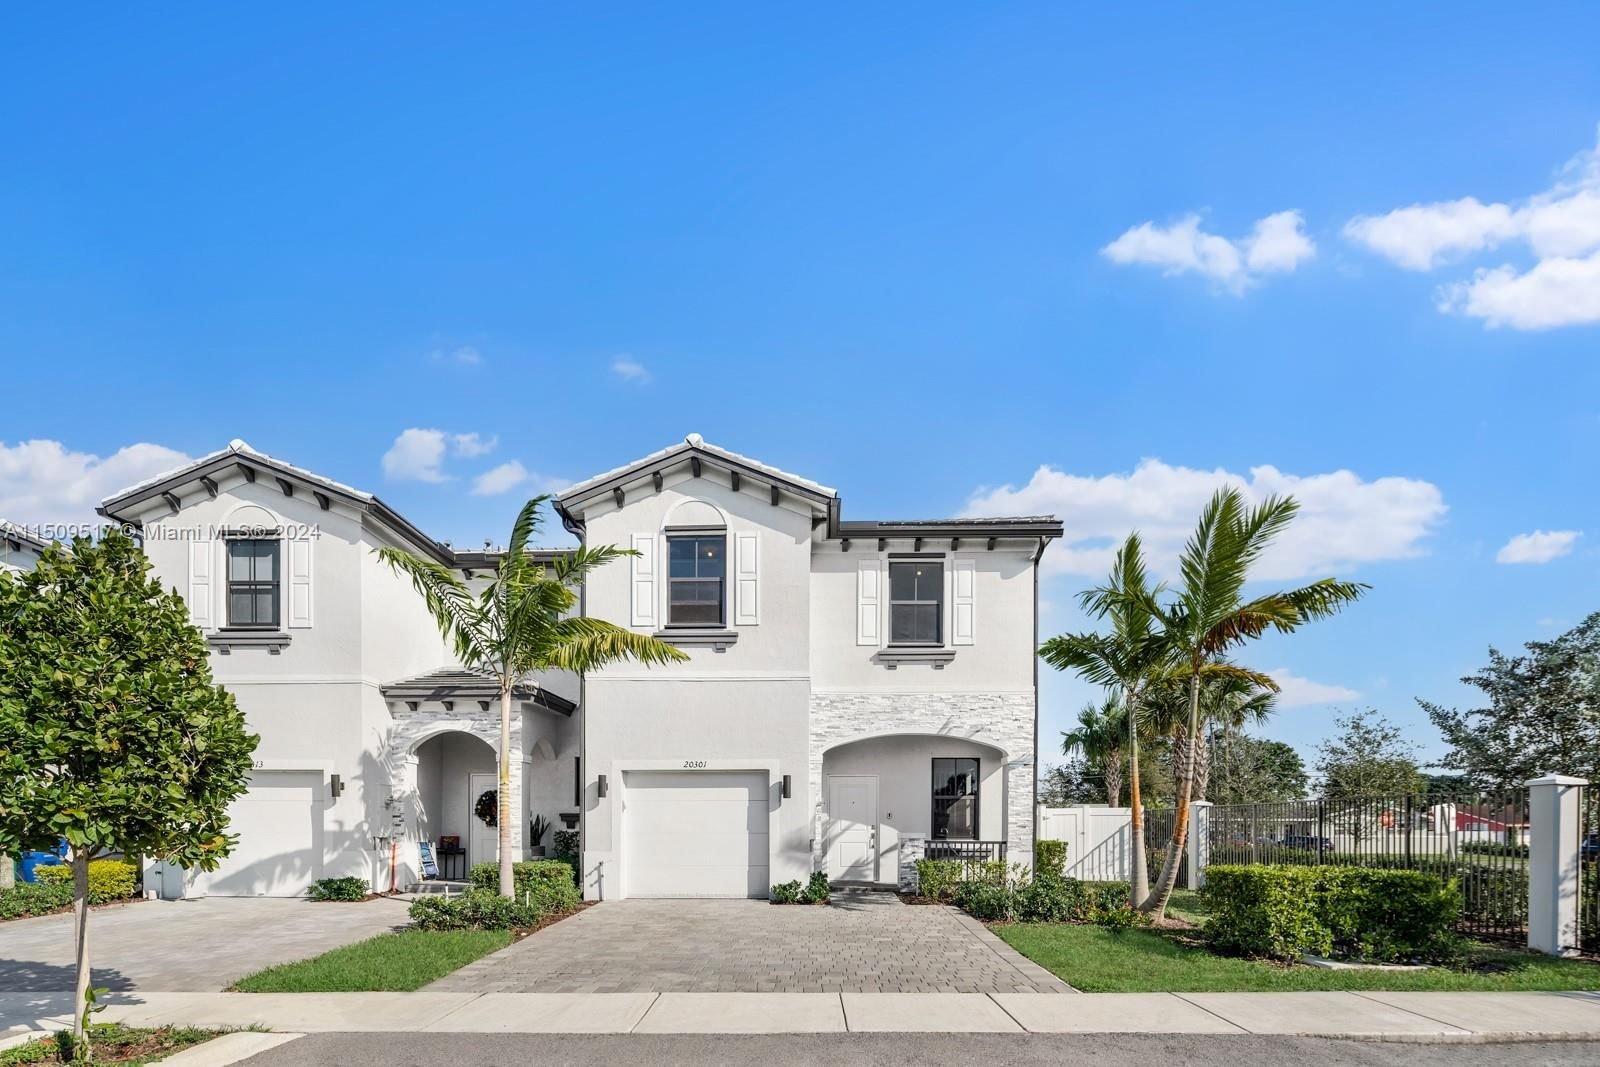 Real estate property located at 20301 4th Ct #20301, Miami-Dade County, VISTA LAGO, Miami Gardens, FL